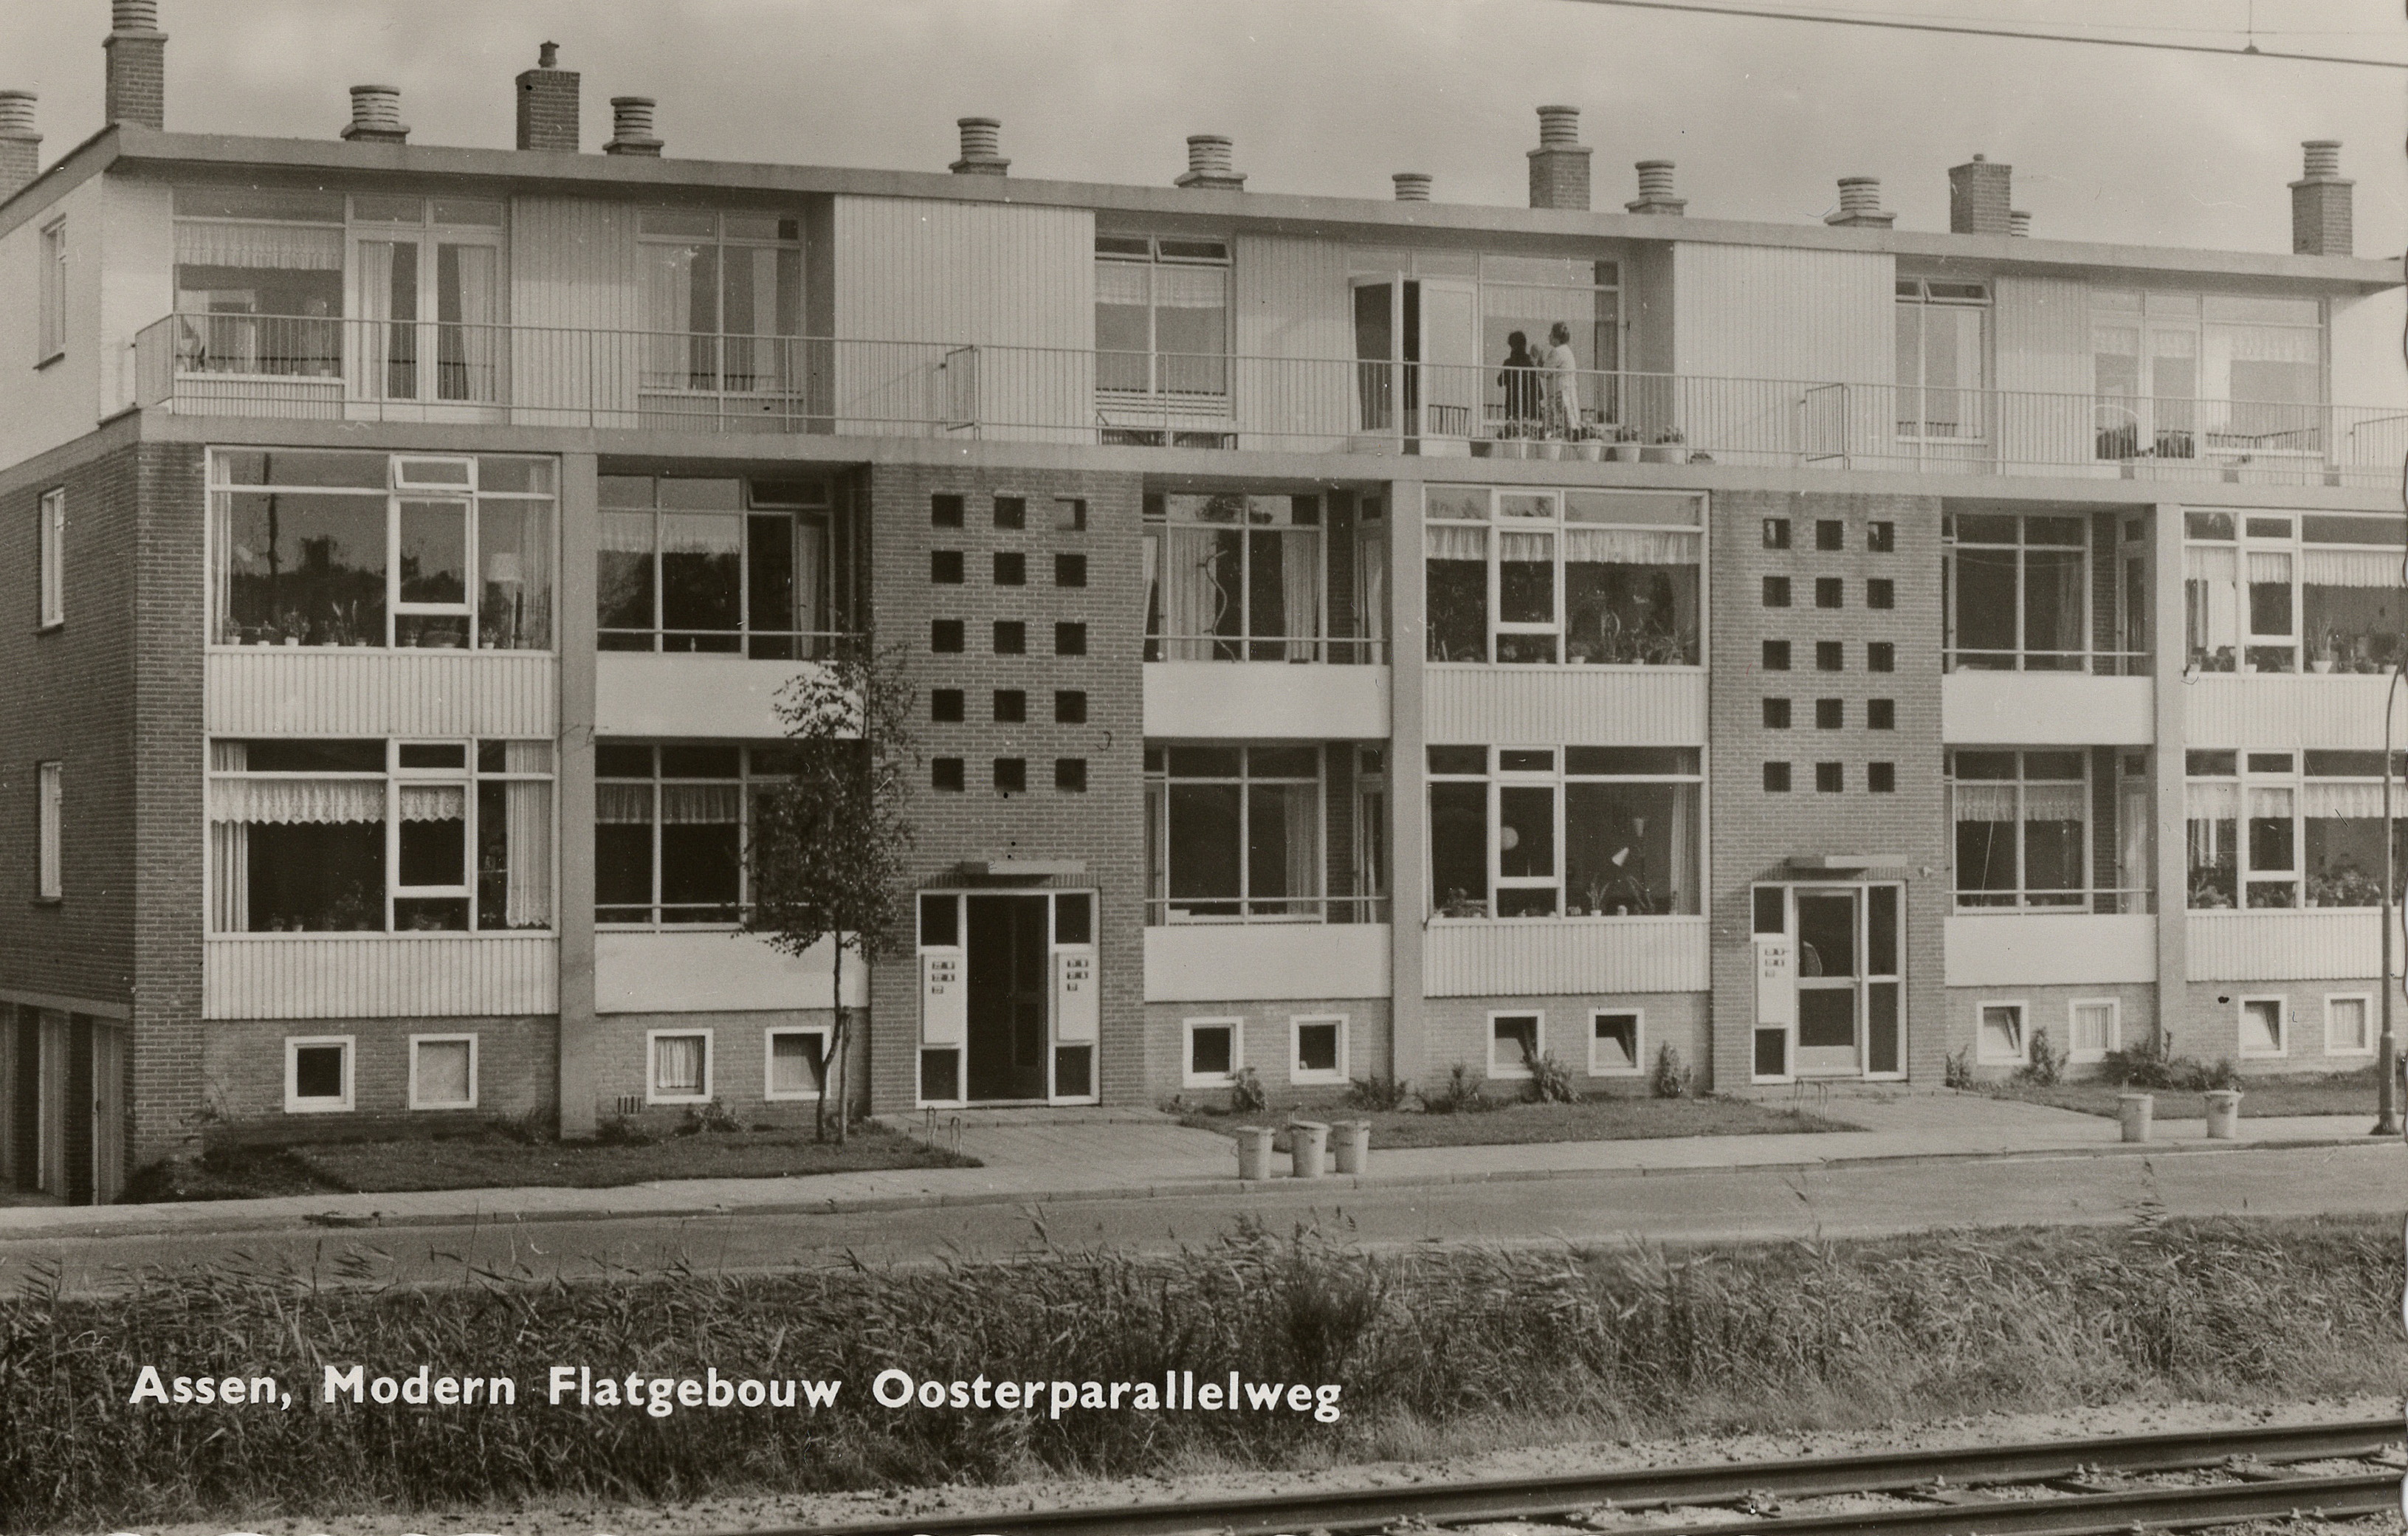 De Asser ansichtkaartenmaker Le Roux meldde bij dit huizenblok aan de Oosterparallelweg bij het station voor alle zekerheid ‘Modern Flatgebouw’. (collectie Reint Hofkamp)